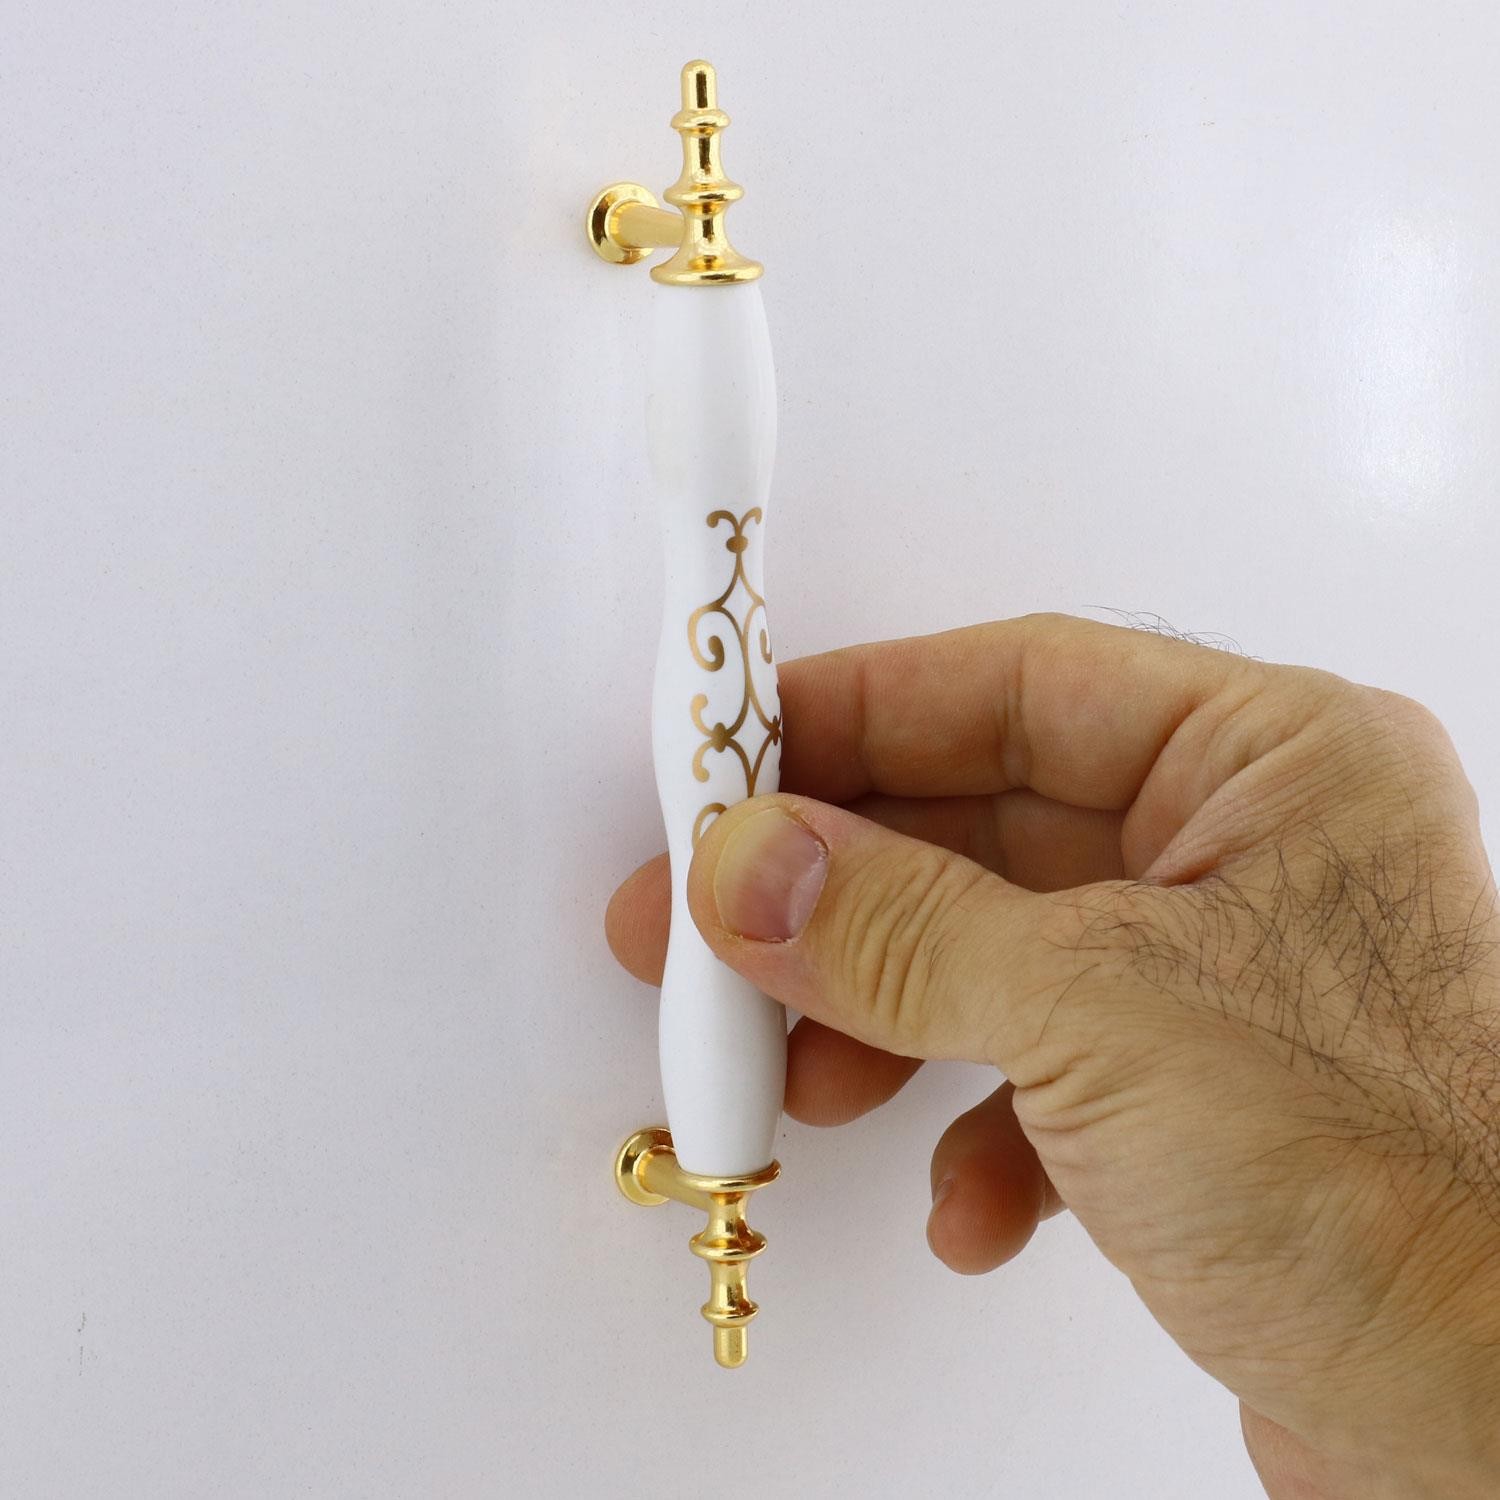 Halley Mobilya Mutfak Dolabı Çekmece Dolap Kapak Kulpu Kulbu Gold Beyaz 128 mm Polimer Kulp